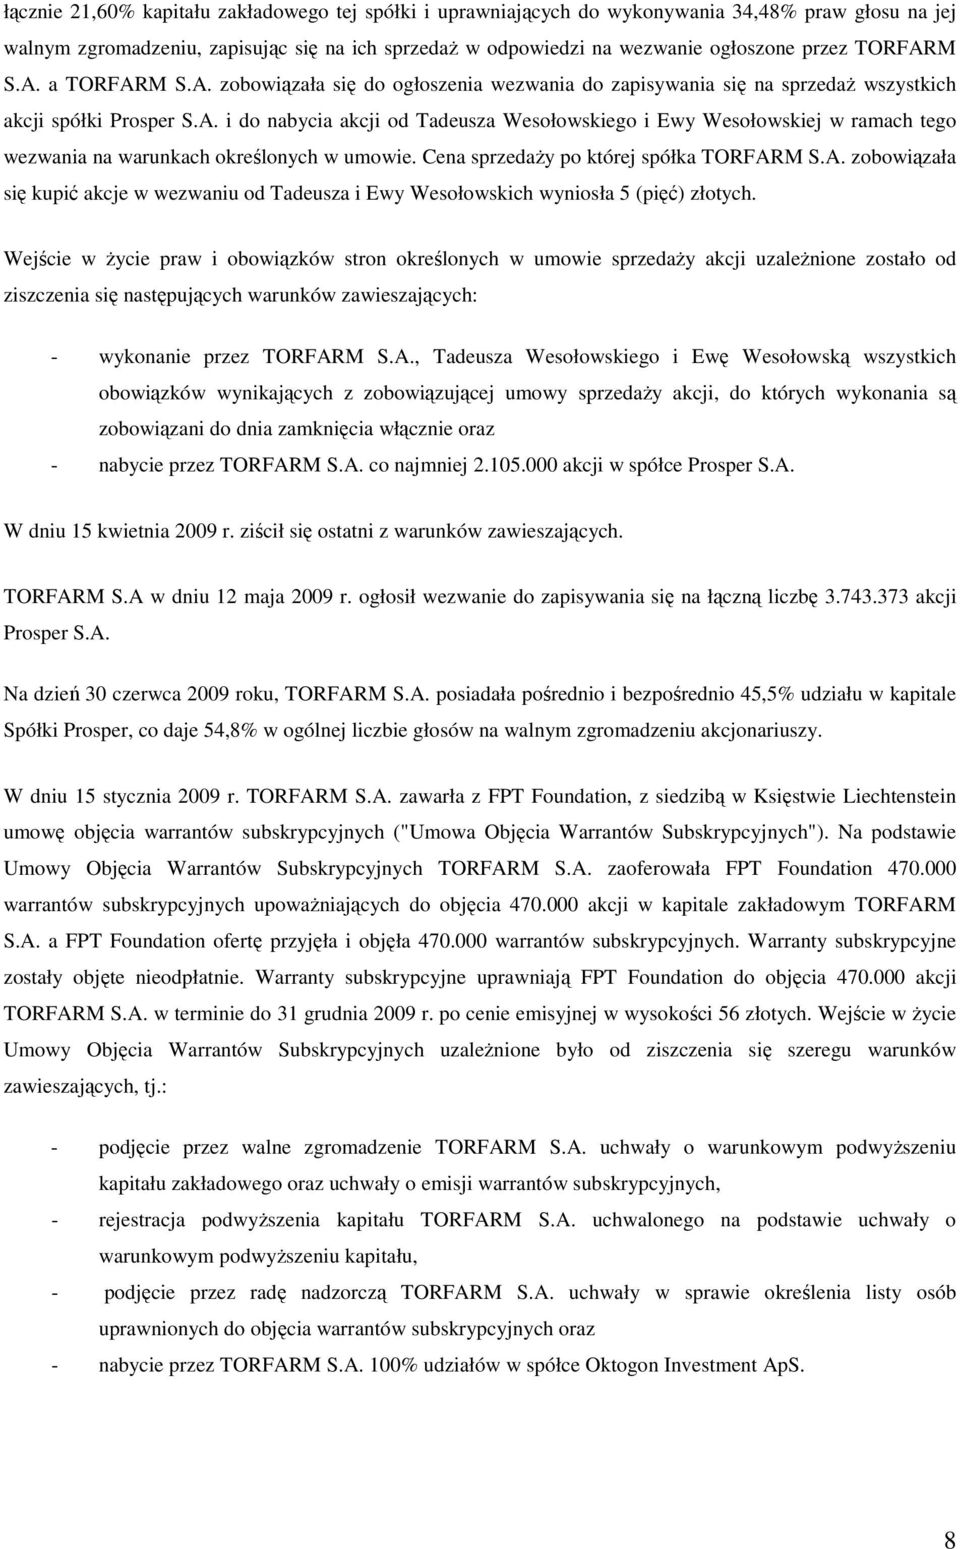 Cena sprzedaŝy po której spółka TORFARM S.A. zobowiązała się kupić akcje w wezwaniu od Tadeusza i Ewy Wesołowskich wyniosła 5 (pięć) złotych.